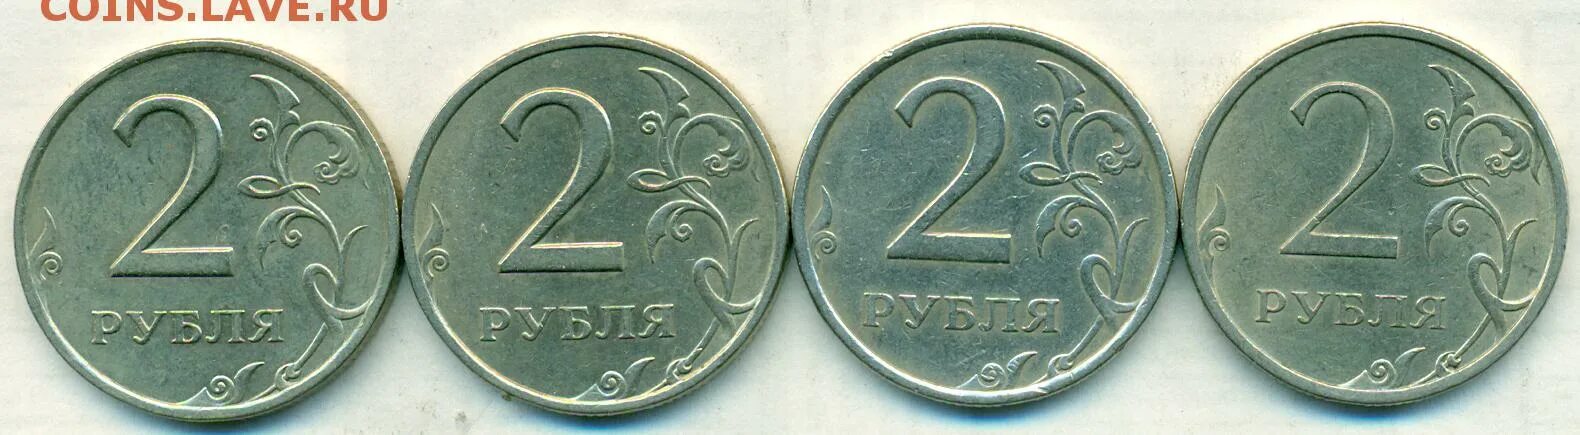 35 6 в рублях. 2 Рубля 2007 ММД. 2 Рубля банк России 2013. 2,4 Руб+1,6 руб. 2 Рубля (4 мая 2000) Смоленск.